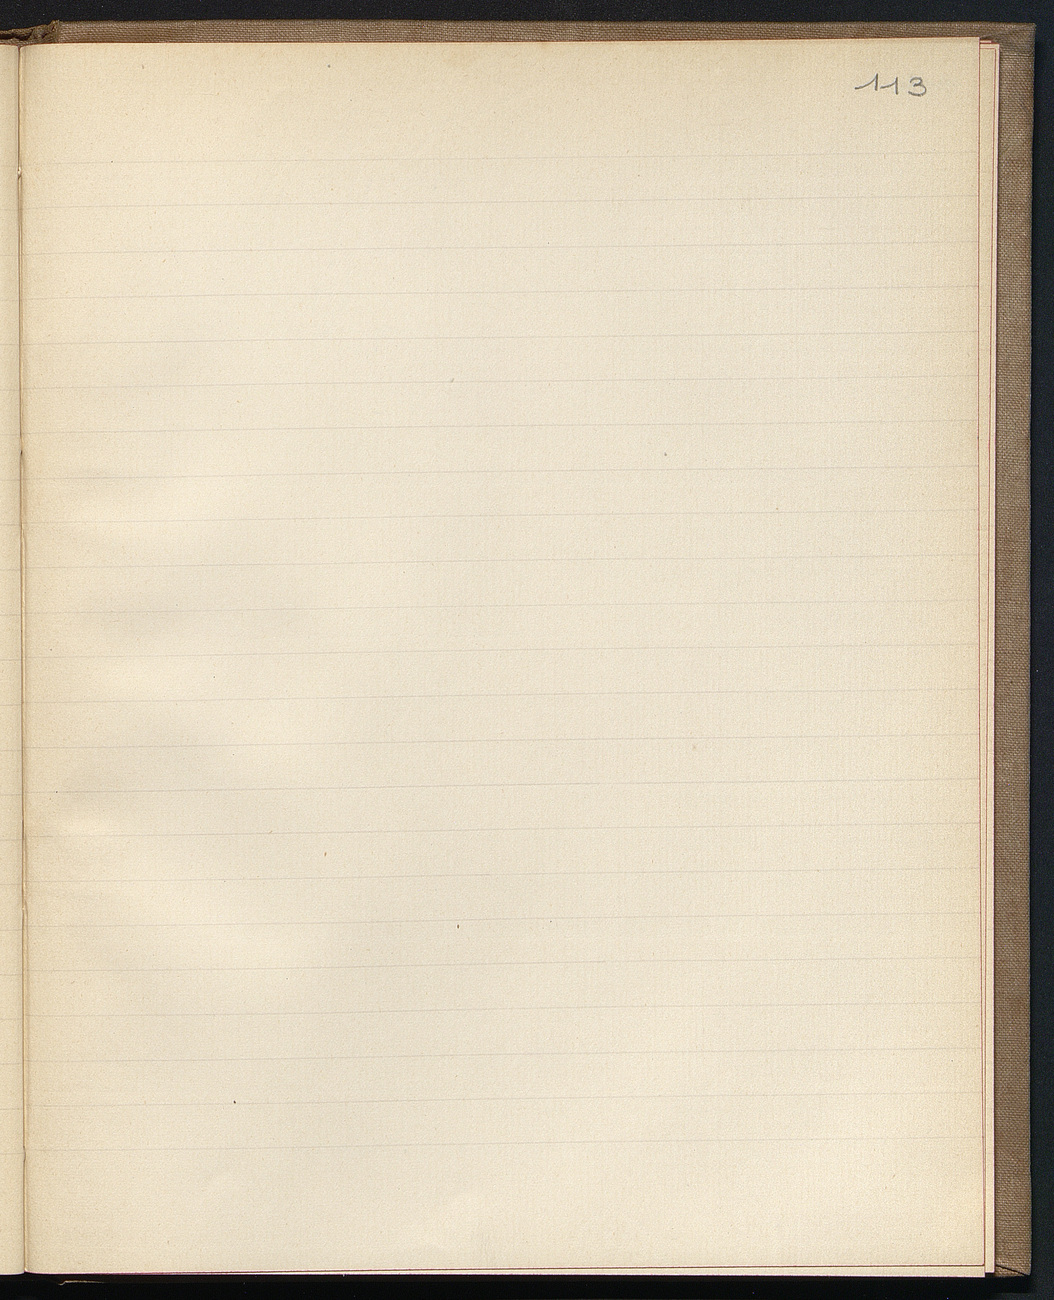 [folio 113: foliotation de la main de bibliothécaire][page blanche]